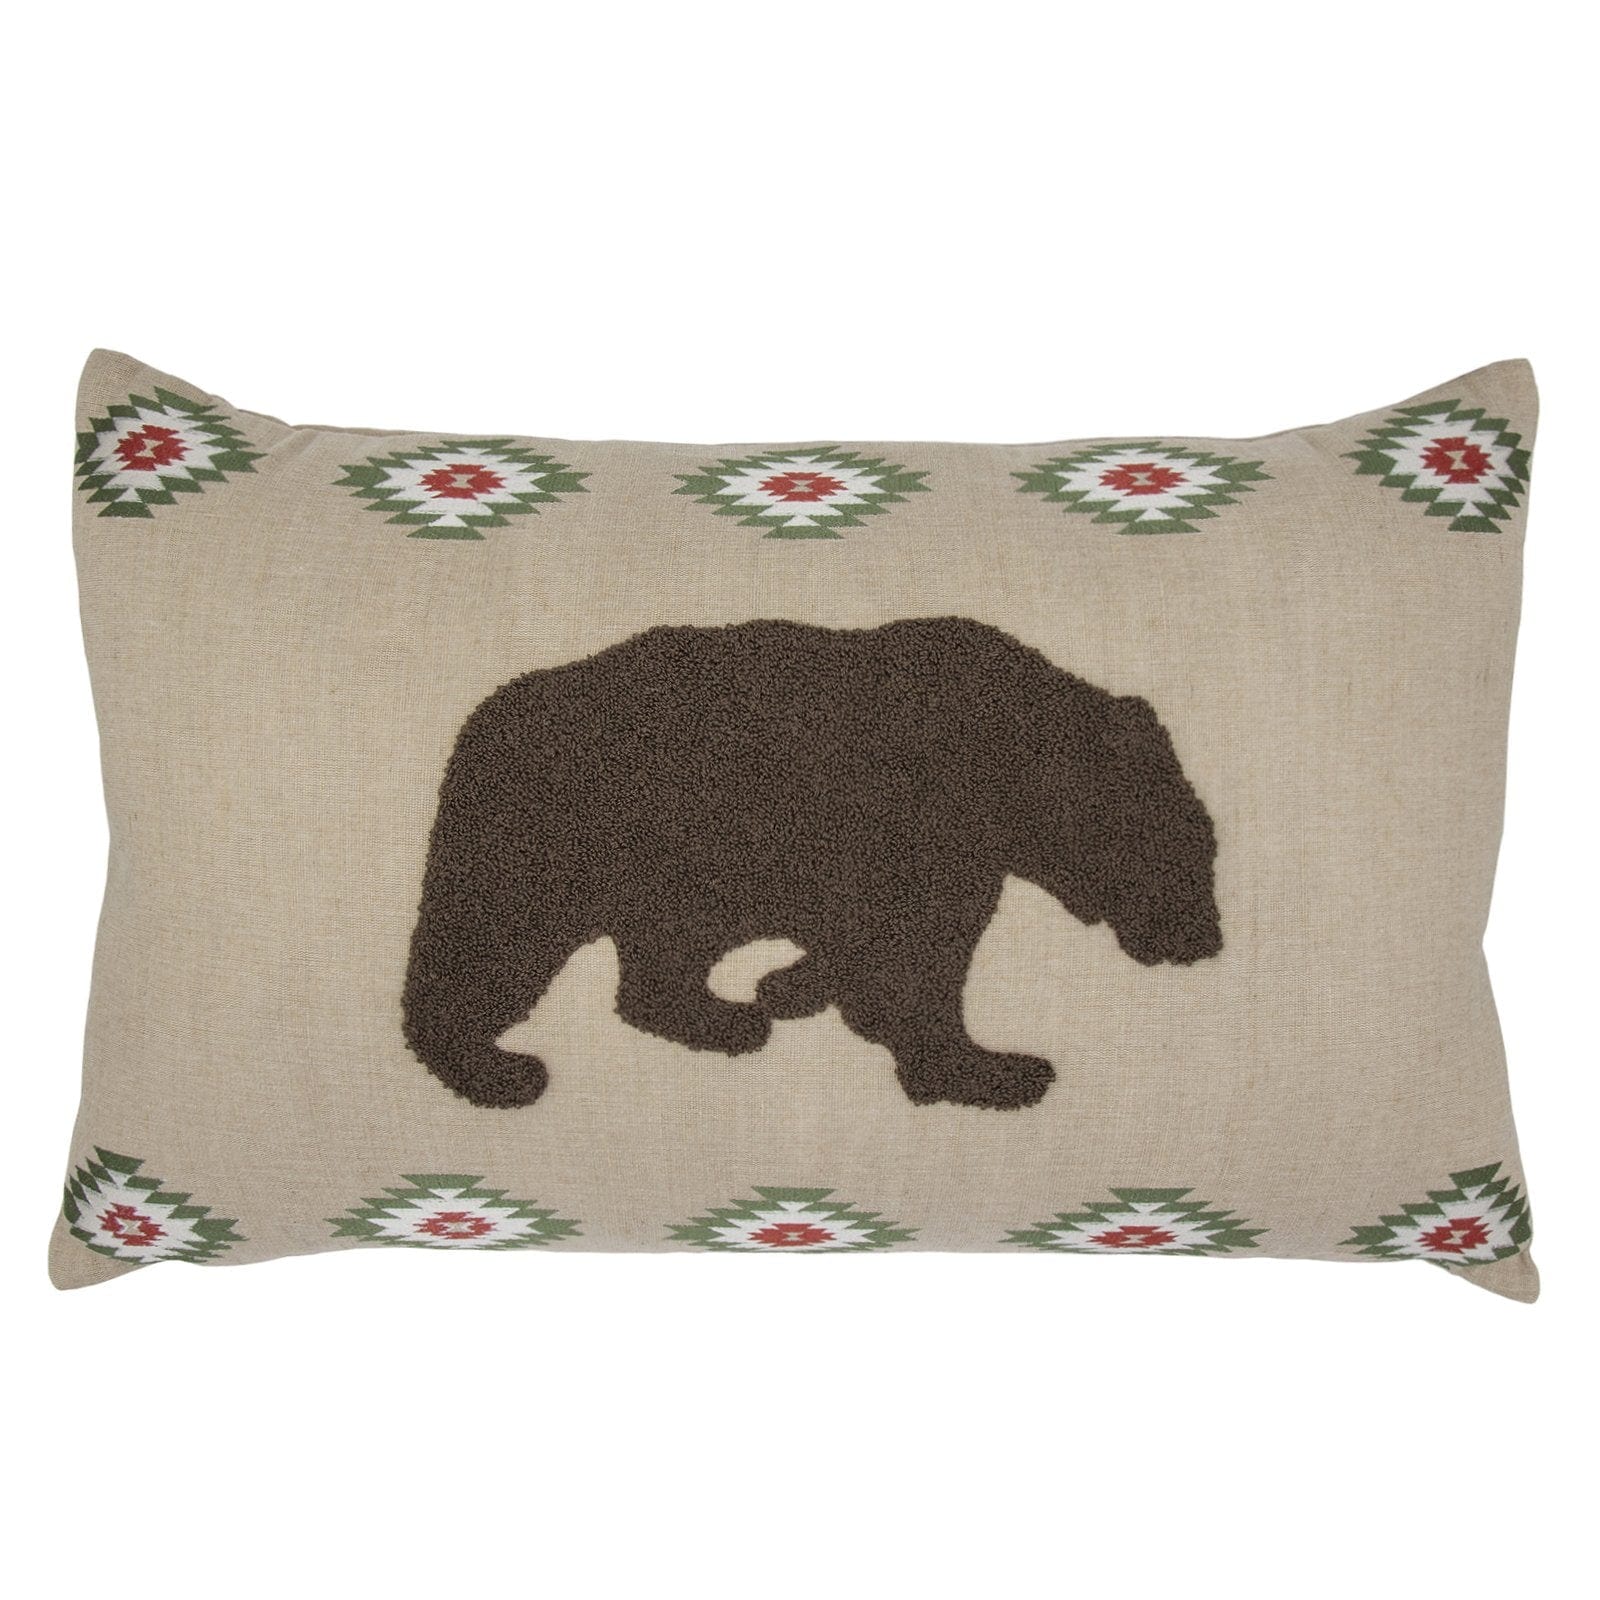 Aztec Bear Embroidered Burlap Lumbar Pillow, 16x26 Pillow